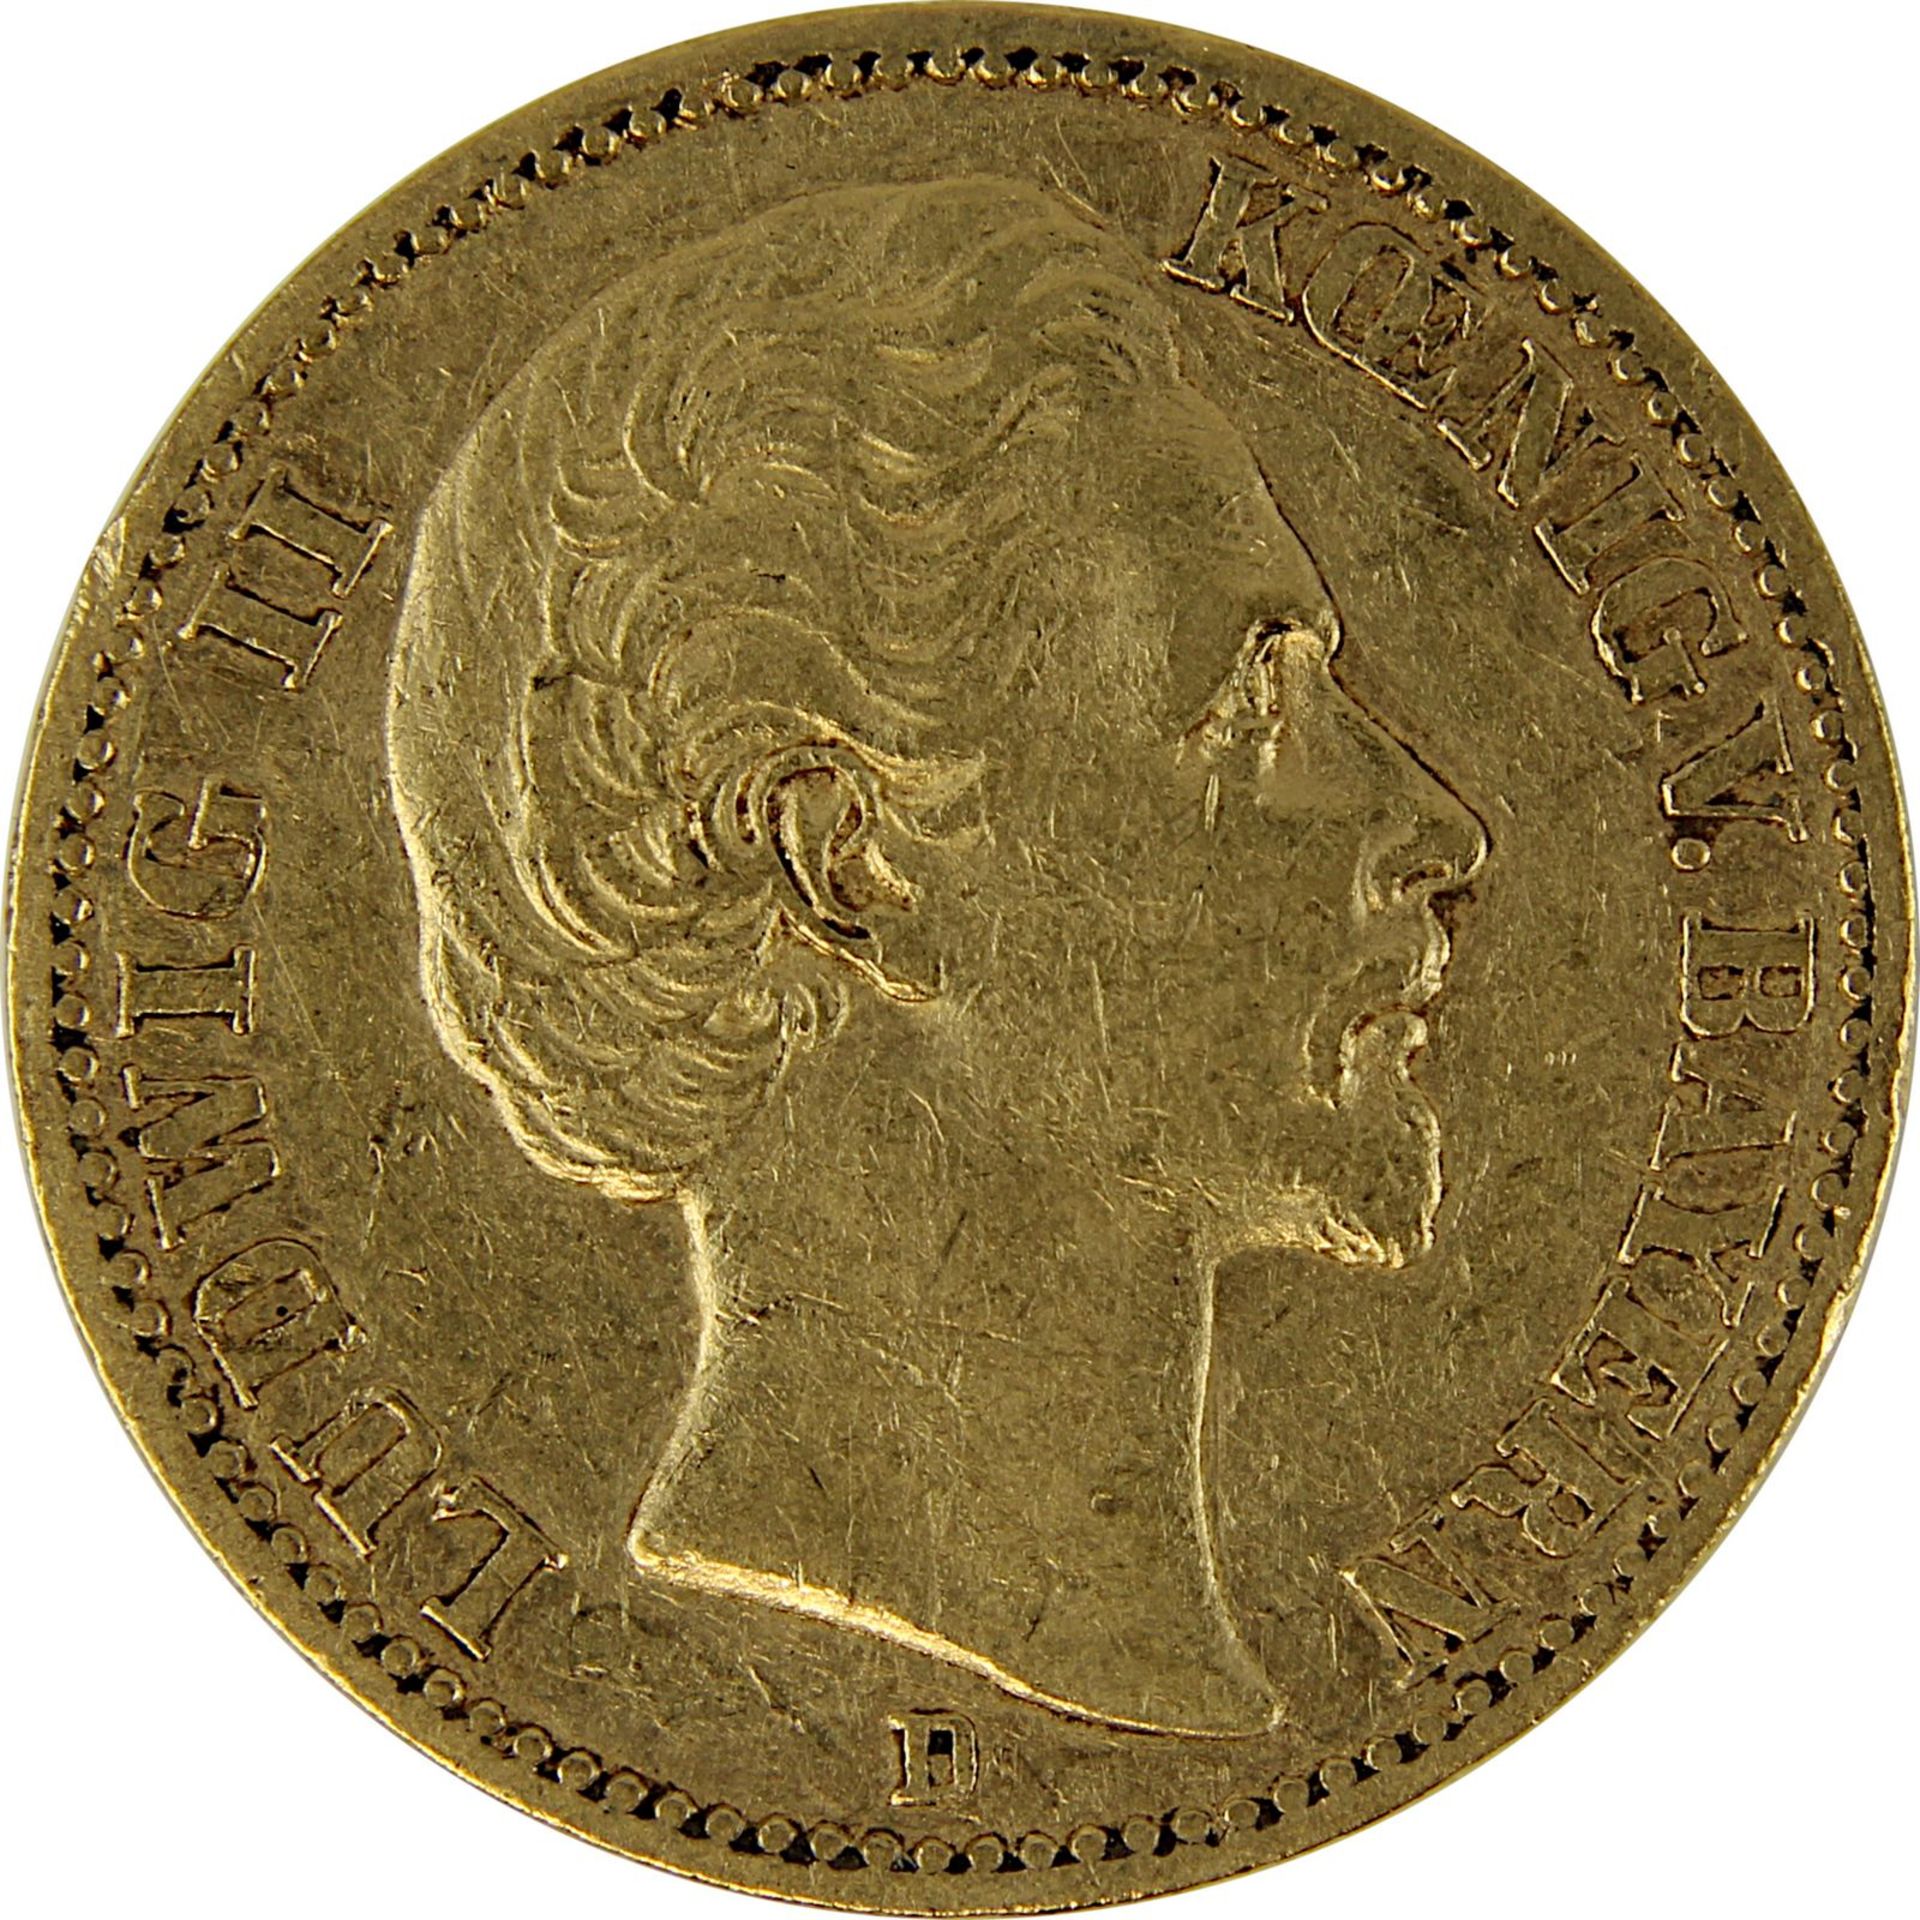 Goldmünze zu 20 Mark, Bayern - Deutsches Reich 1873, Avers: Kopf Ludwig II König von Bayern nach re. - Bild 2 aus 3